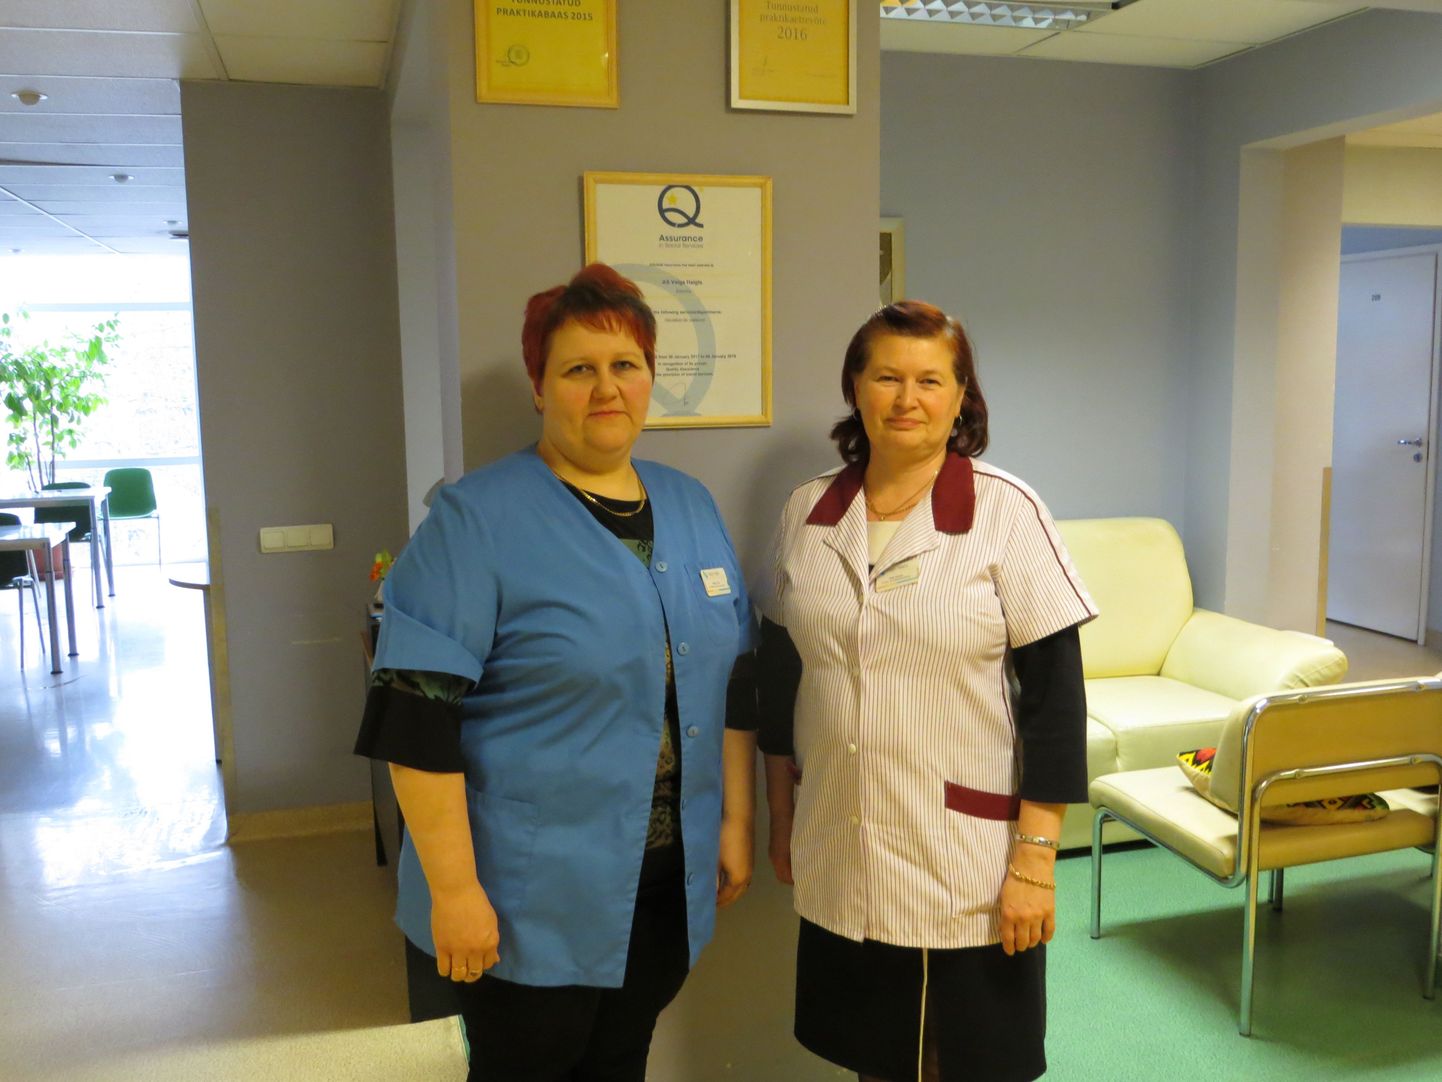 Valga haigla hoolekandeosakonna juhatajal Monika Hornil (vasakul) ning hooldus- ja kvaliteedi­spetsialistil Ruth Karolinil ja kogu nende kollektiivil on põhjust rahul olla, sest sotsiaalvaldkonna rahvusvaheline kvaliteedimärk tõendab osakonna teenuste kõrget kvaliteeti.